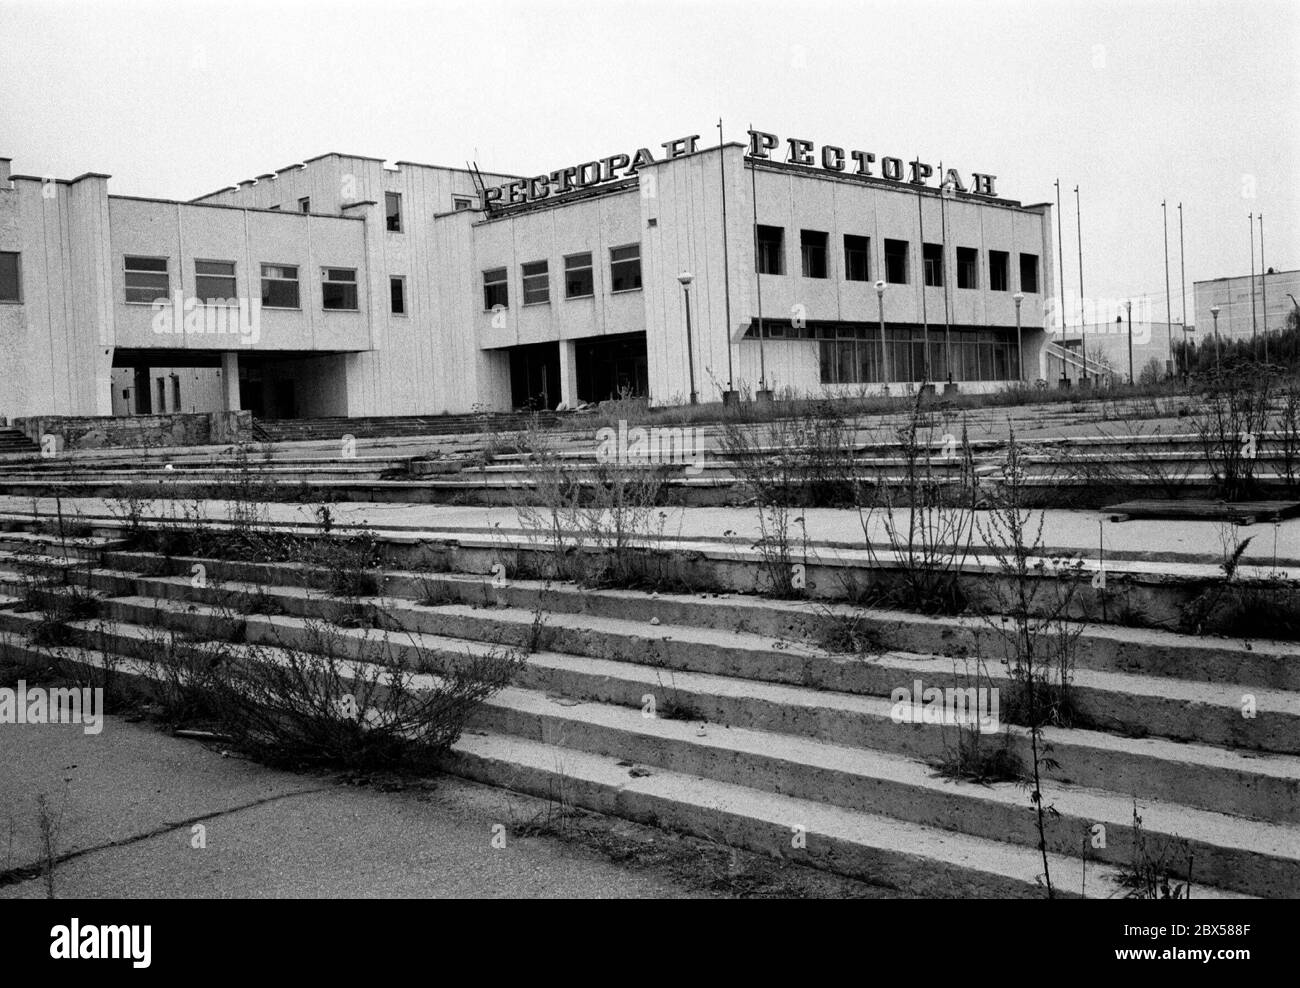 Restaurant im Zentrum von Pripyat, der nächsten Stadt zum Kernkraftwerk Tschernobyl. Erst 36 Stunden nach dem Reaktorunfall wurde die Stadt evakuiert, so dass die Bewohner glaubten, bald nach Hause zurückkehren zu können. Heute liegt die Geisterstadt mitten in der 30 km langen unbewohnbaren Zone um den Reaktor. Stockfoto